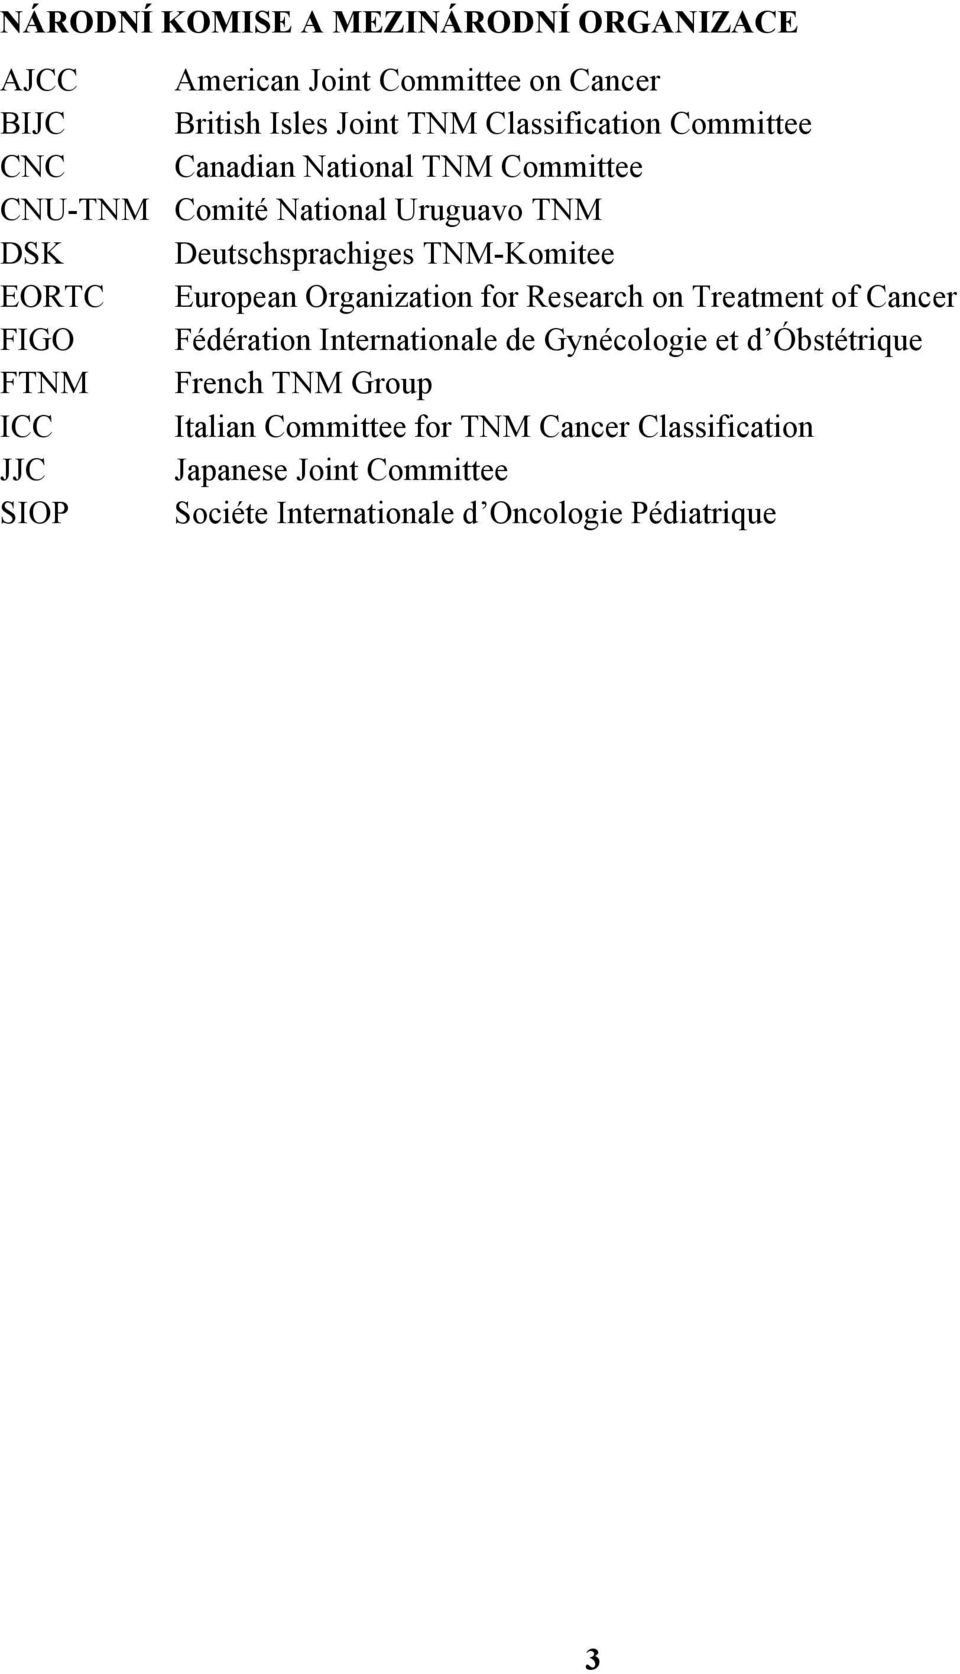 European Organization for Research on Treatment of Cancer FIGO Fédération Internationale de Gynécologie et d Óbstétrique FTNM